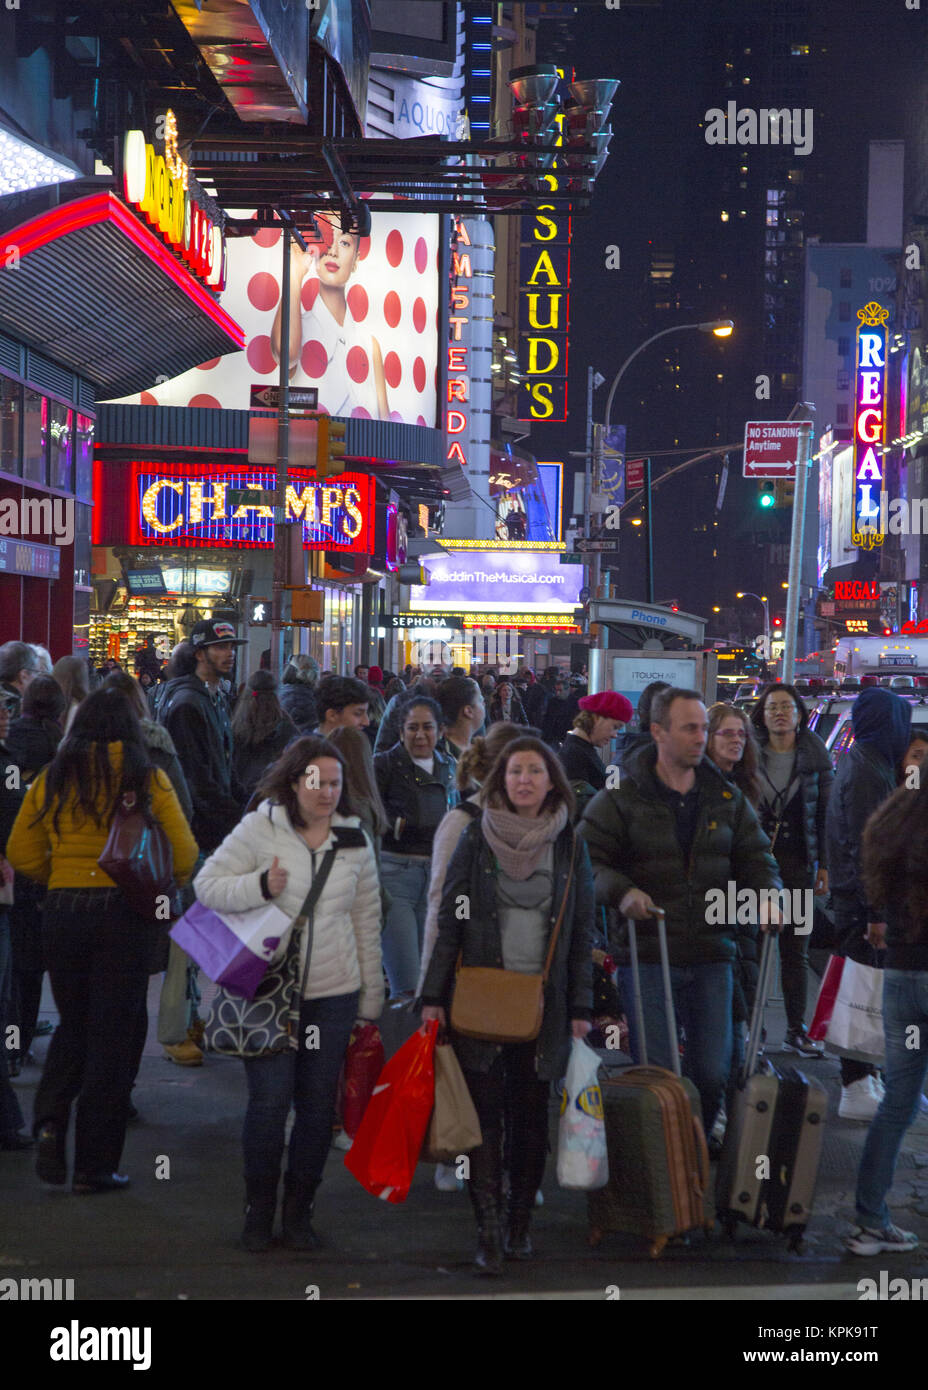 Massen von Touristen mit Gepäck und Einkaufstaschen Spaziergang auf der West 42nd Street in der Times Square Gegend während der Weihnachtszeit in Manhattan, New York City. Stockfoto